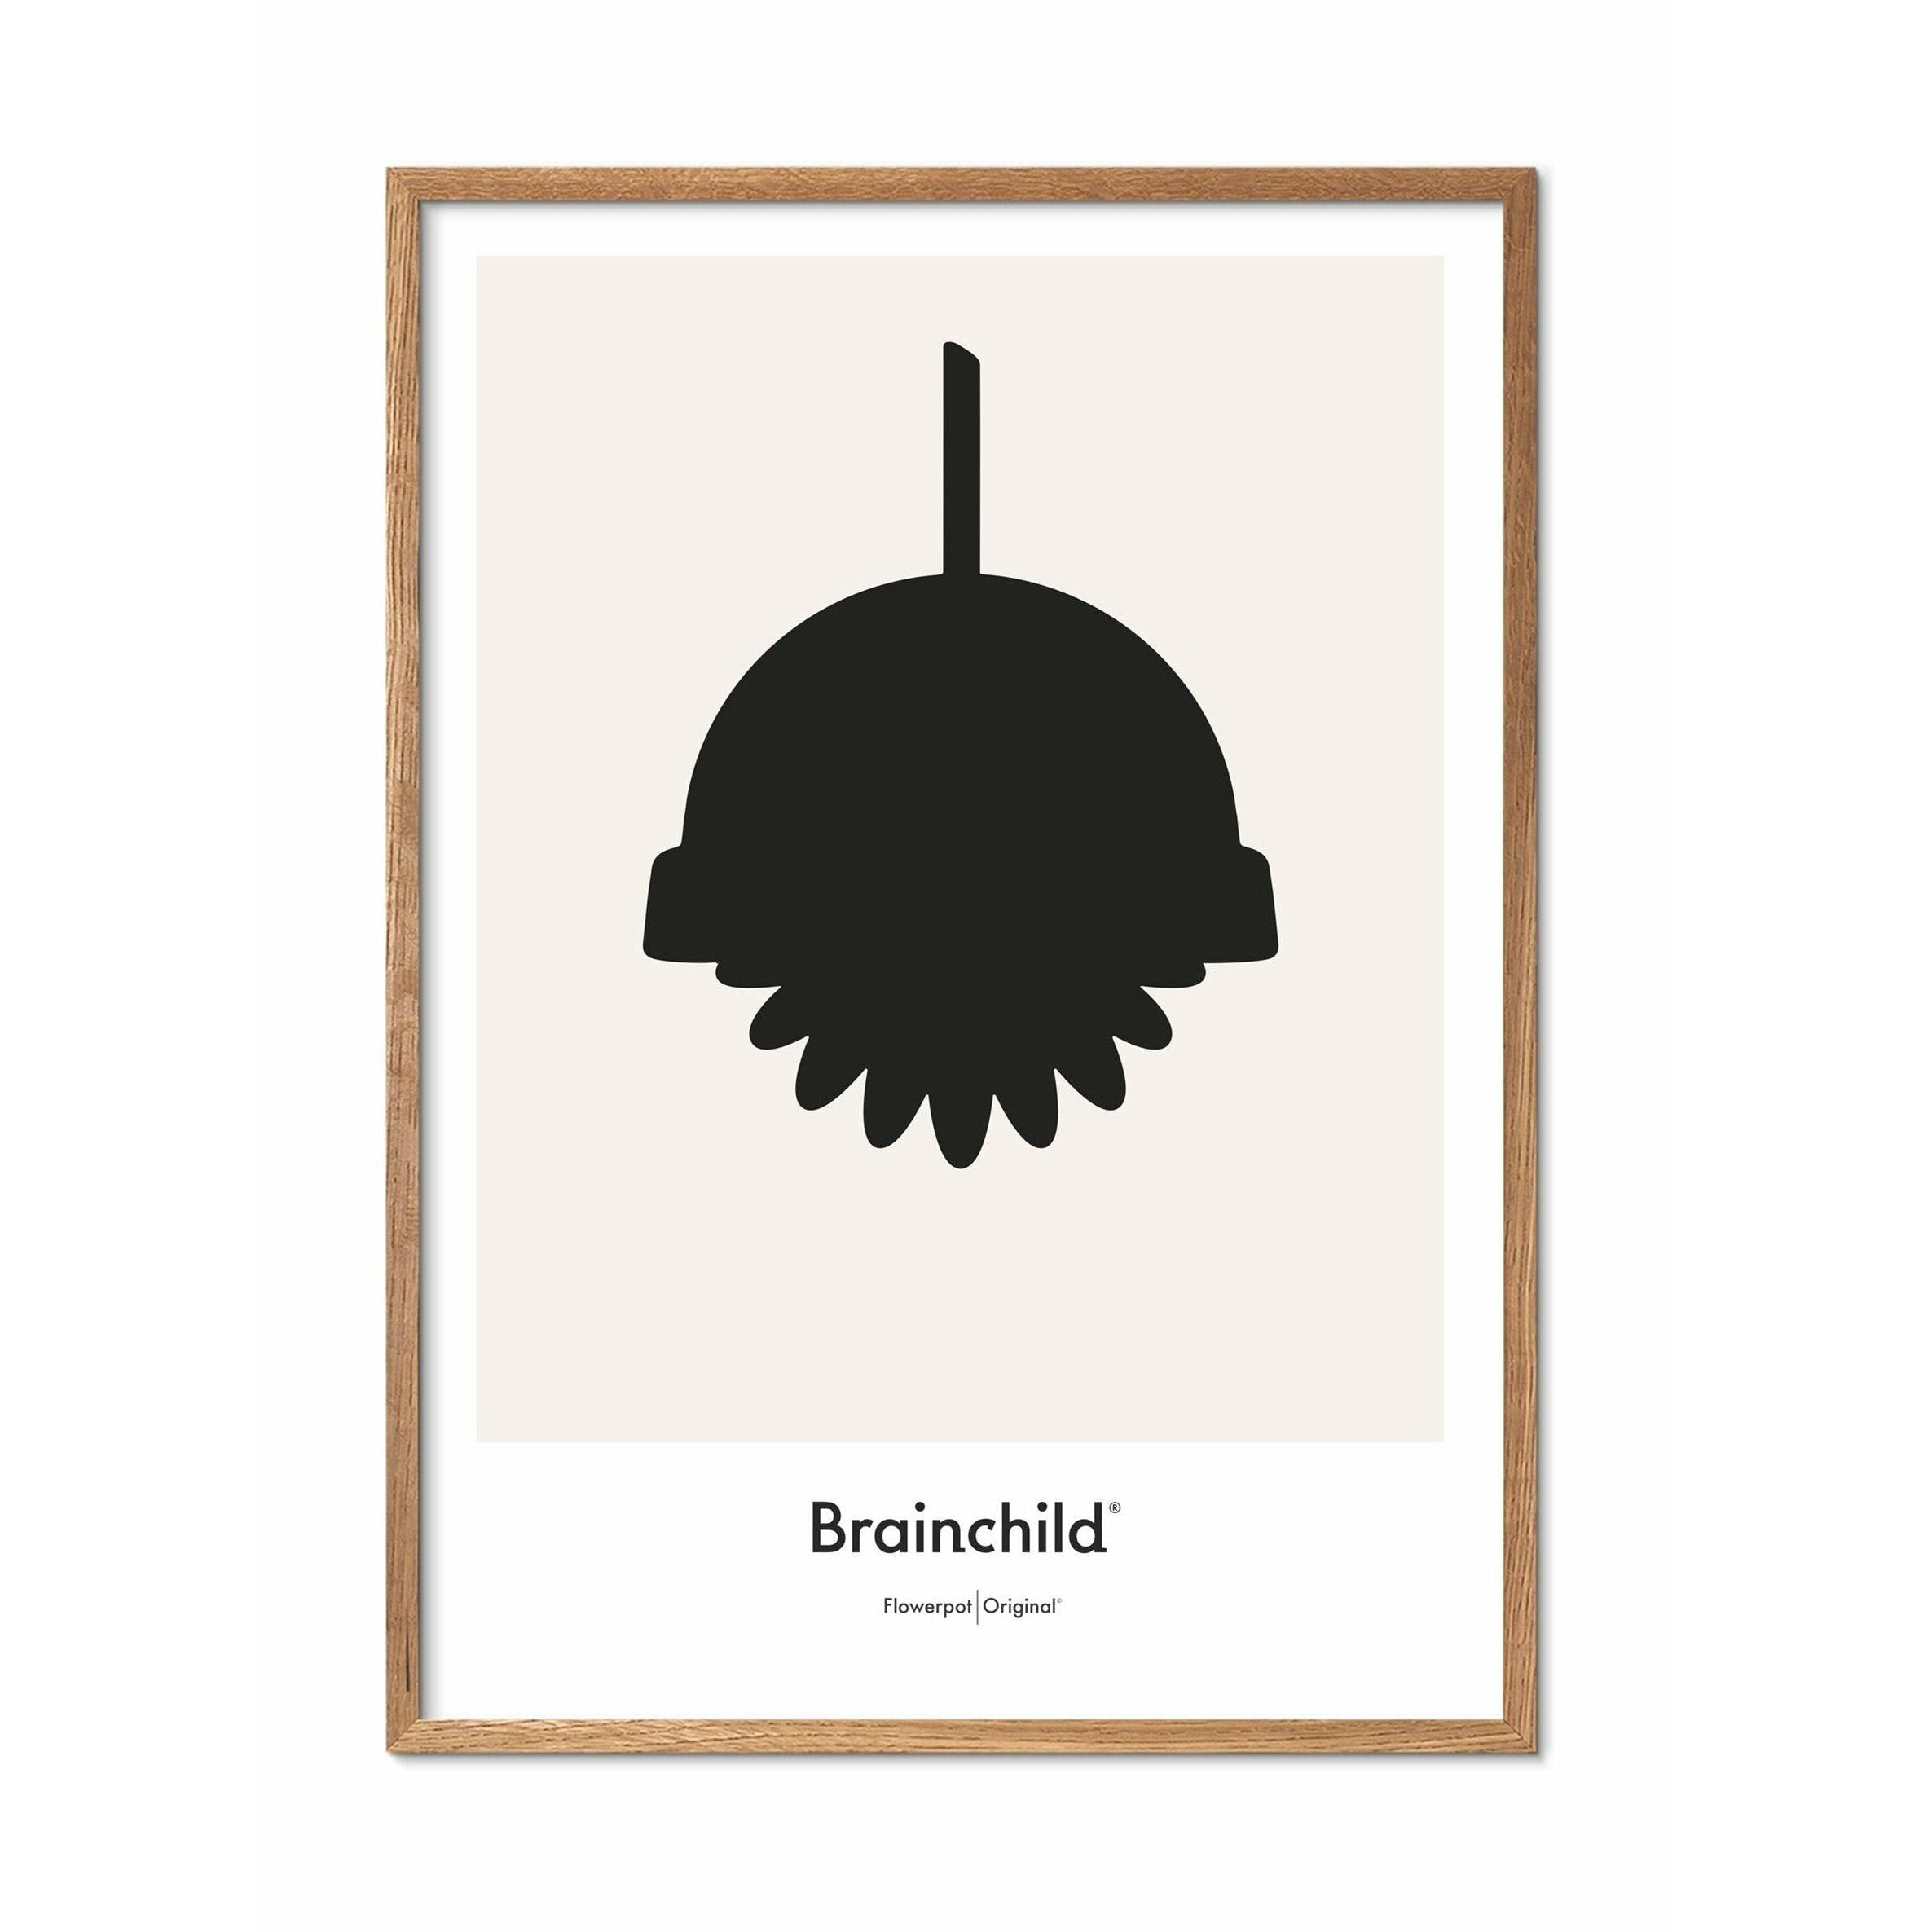 Brainchild Flower Pot Design Icon Poster, Frame Made of Light Wood 70 X100 cm, Gray